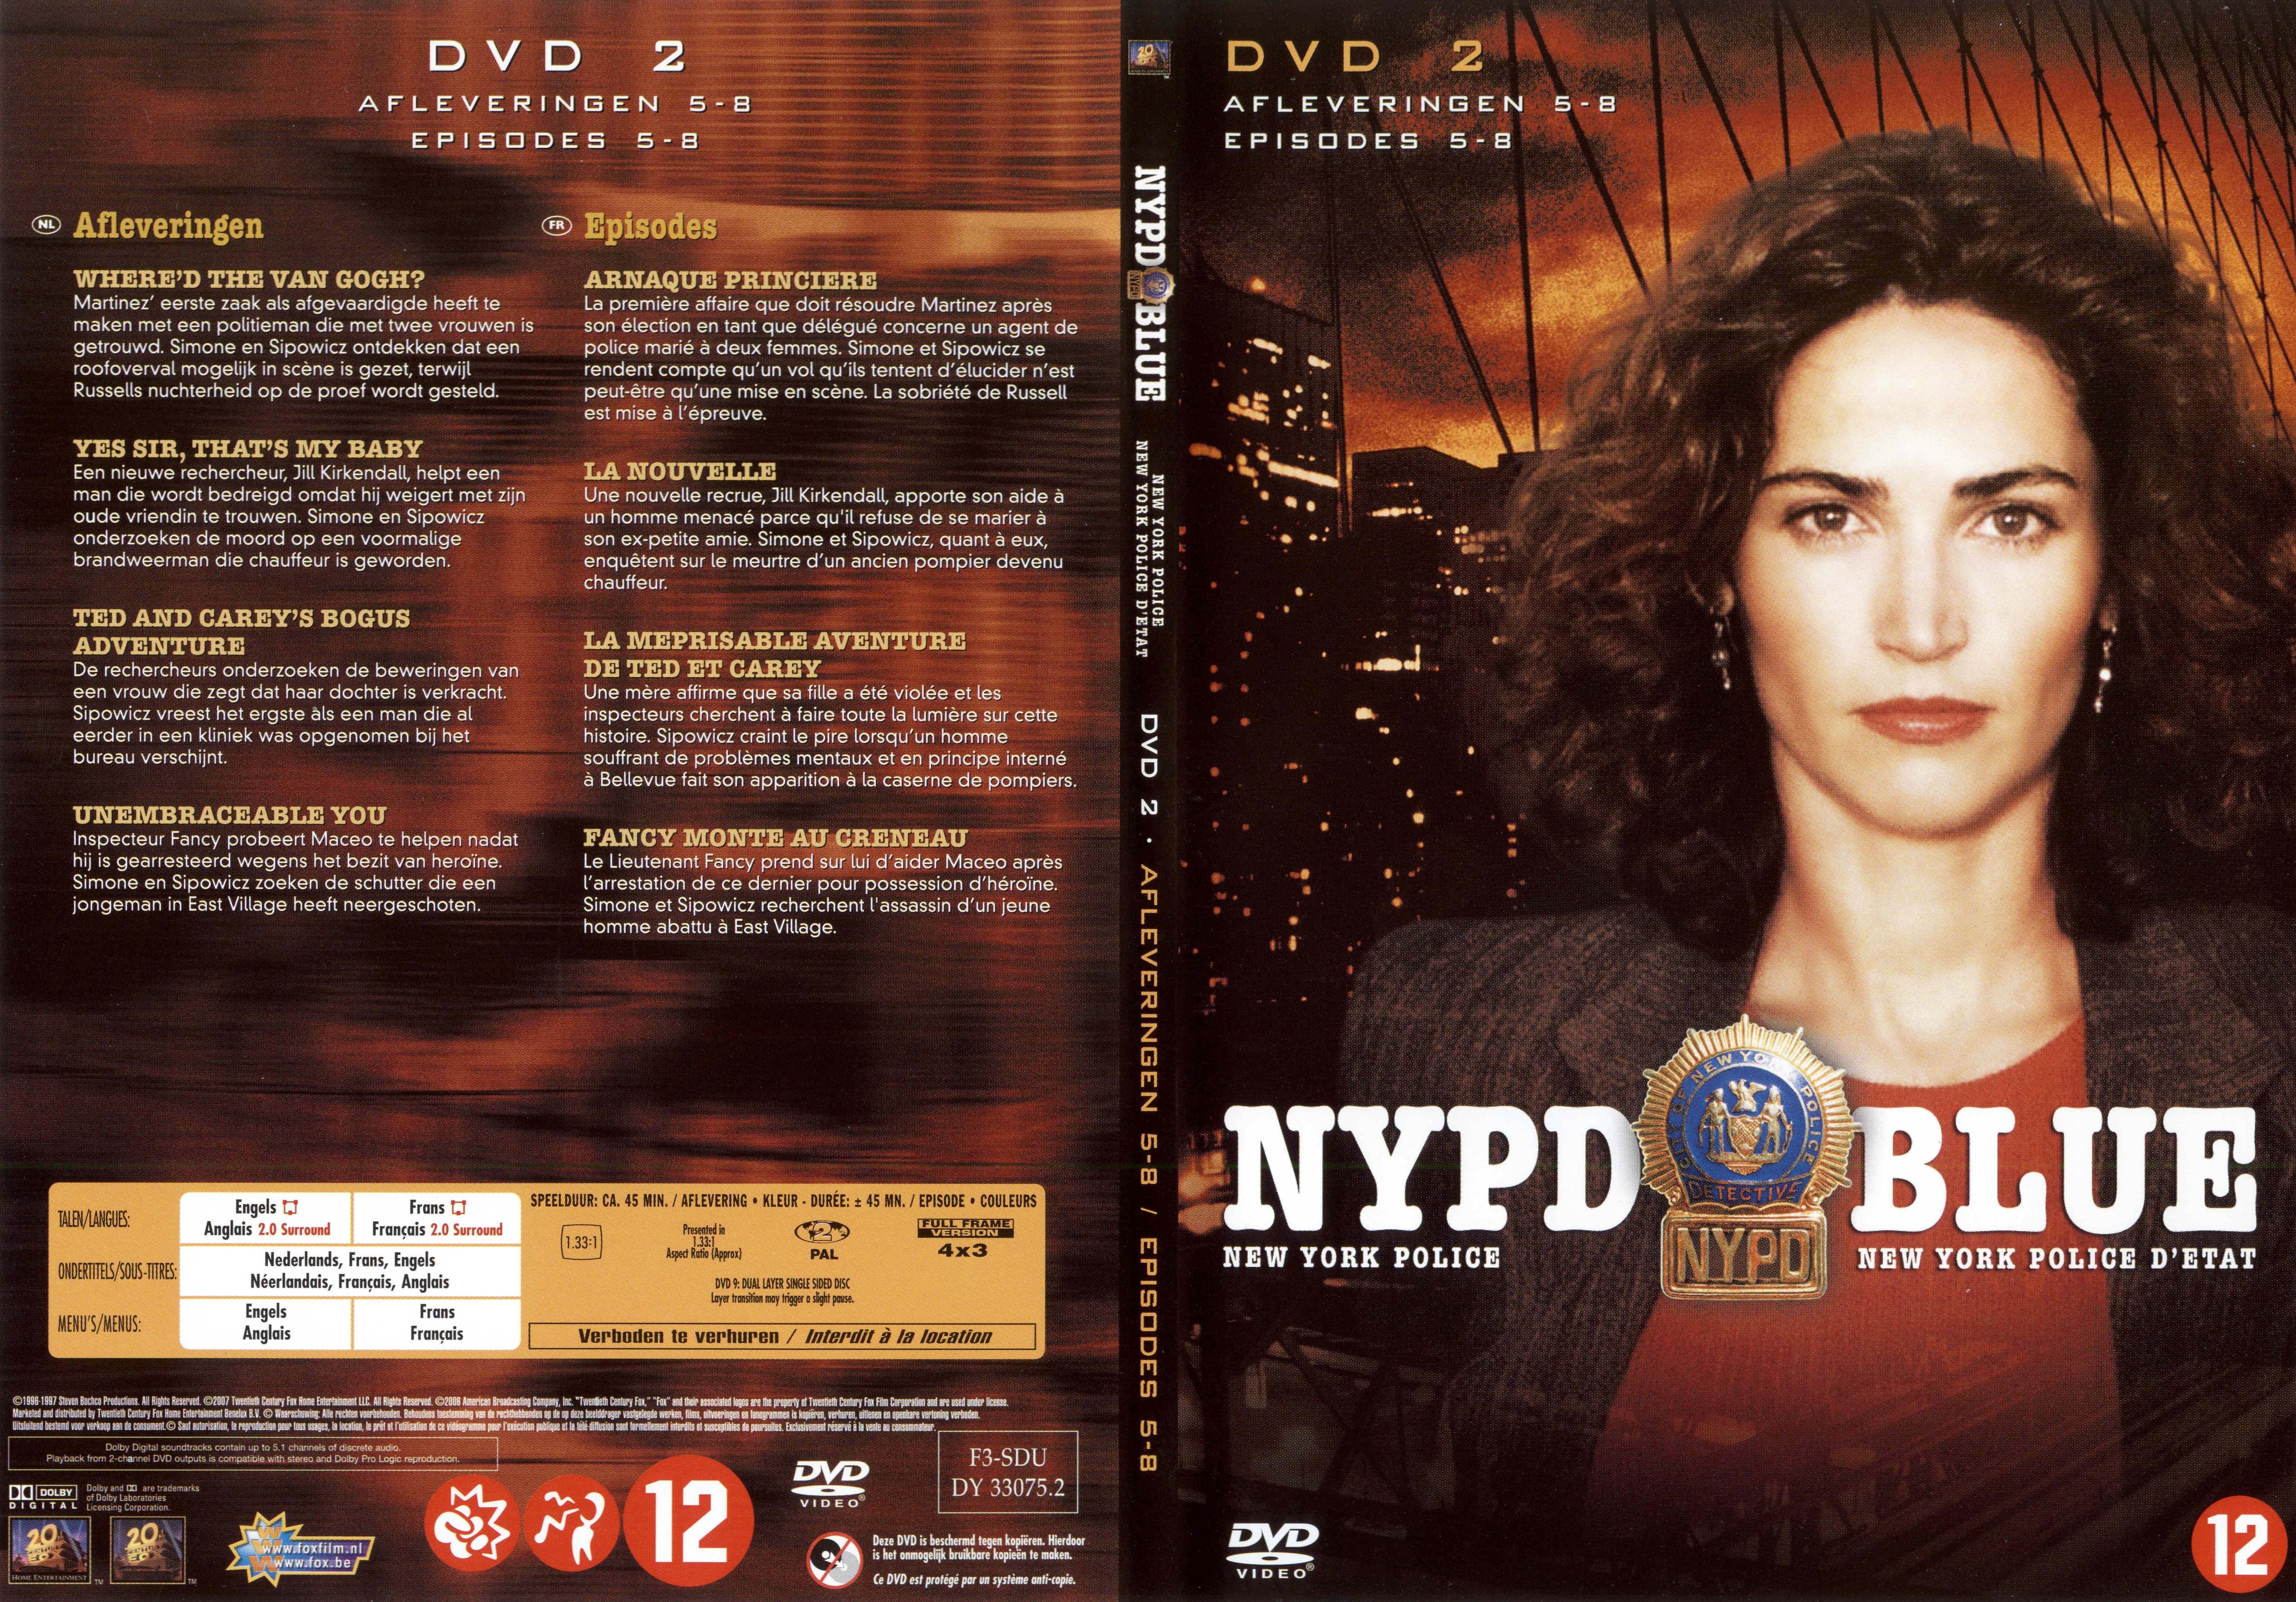 Jaquette DVD NYPD Blue saison 04 dvd 02